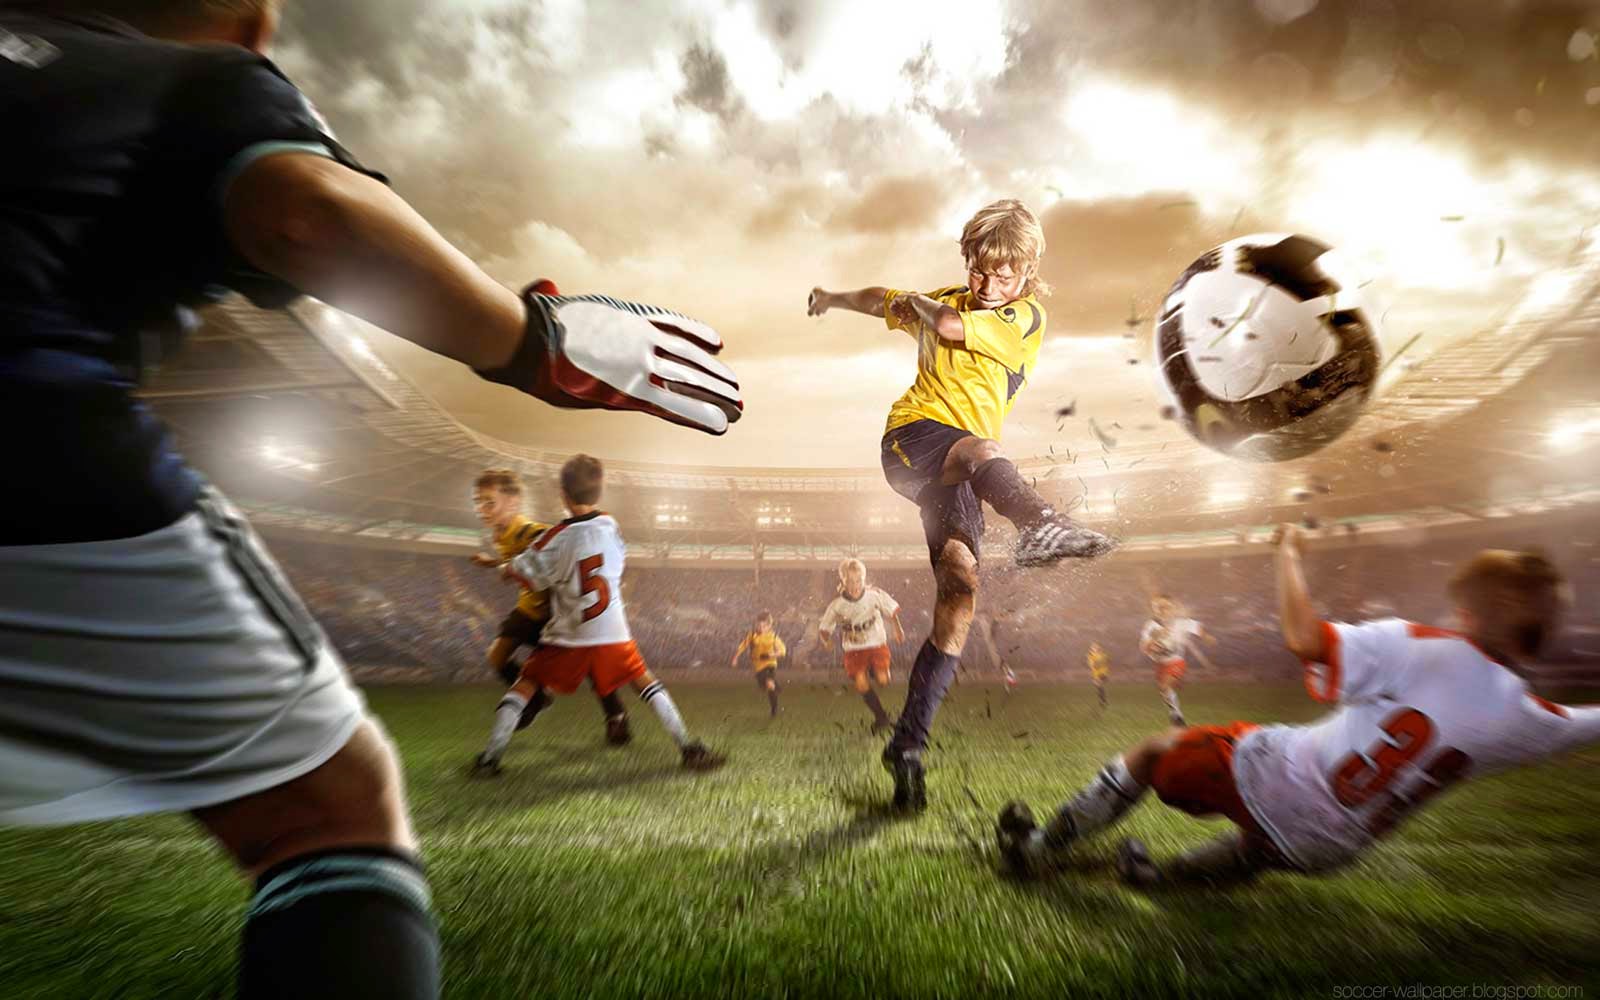 fondos de pantalla de jugador de fútbol,jugador de fútbol,jugador,rugby,fútbol americano,sindicato de rugby